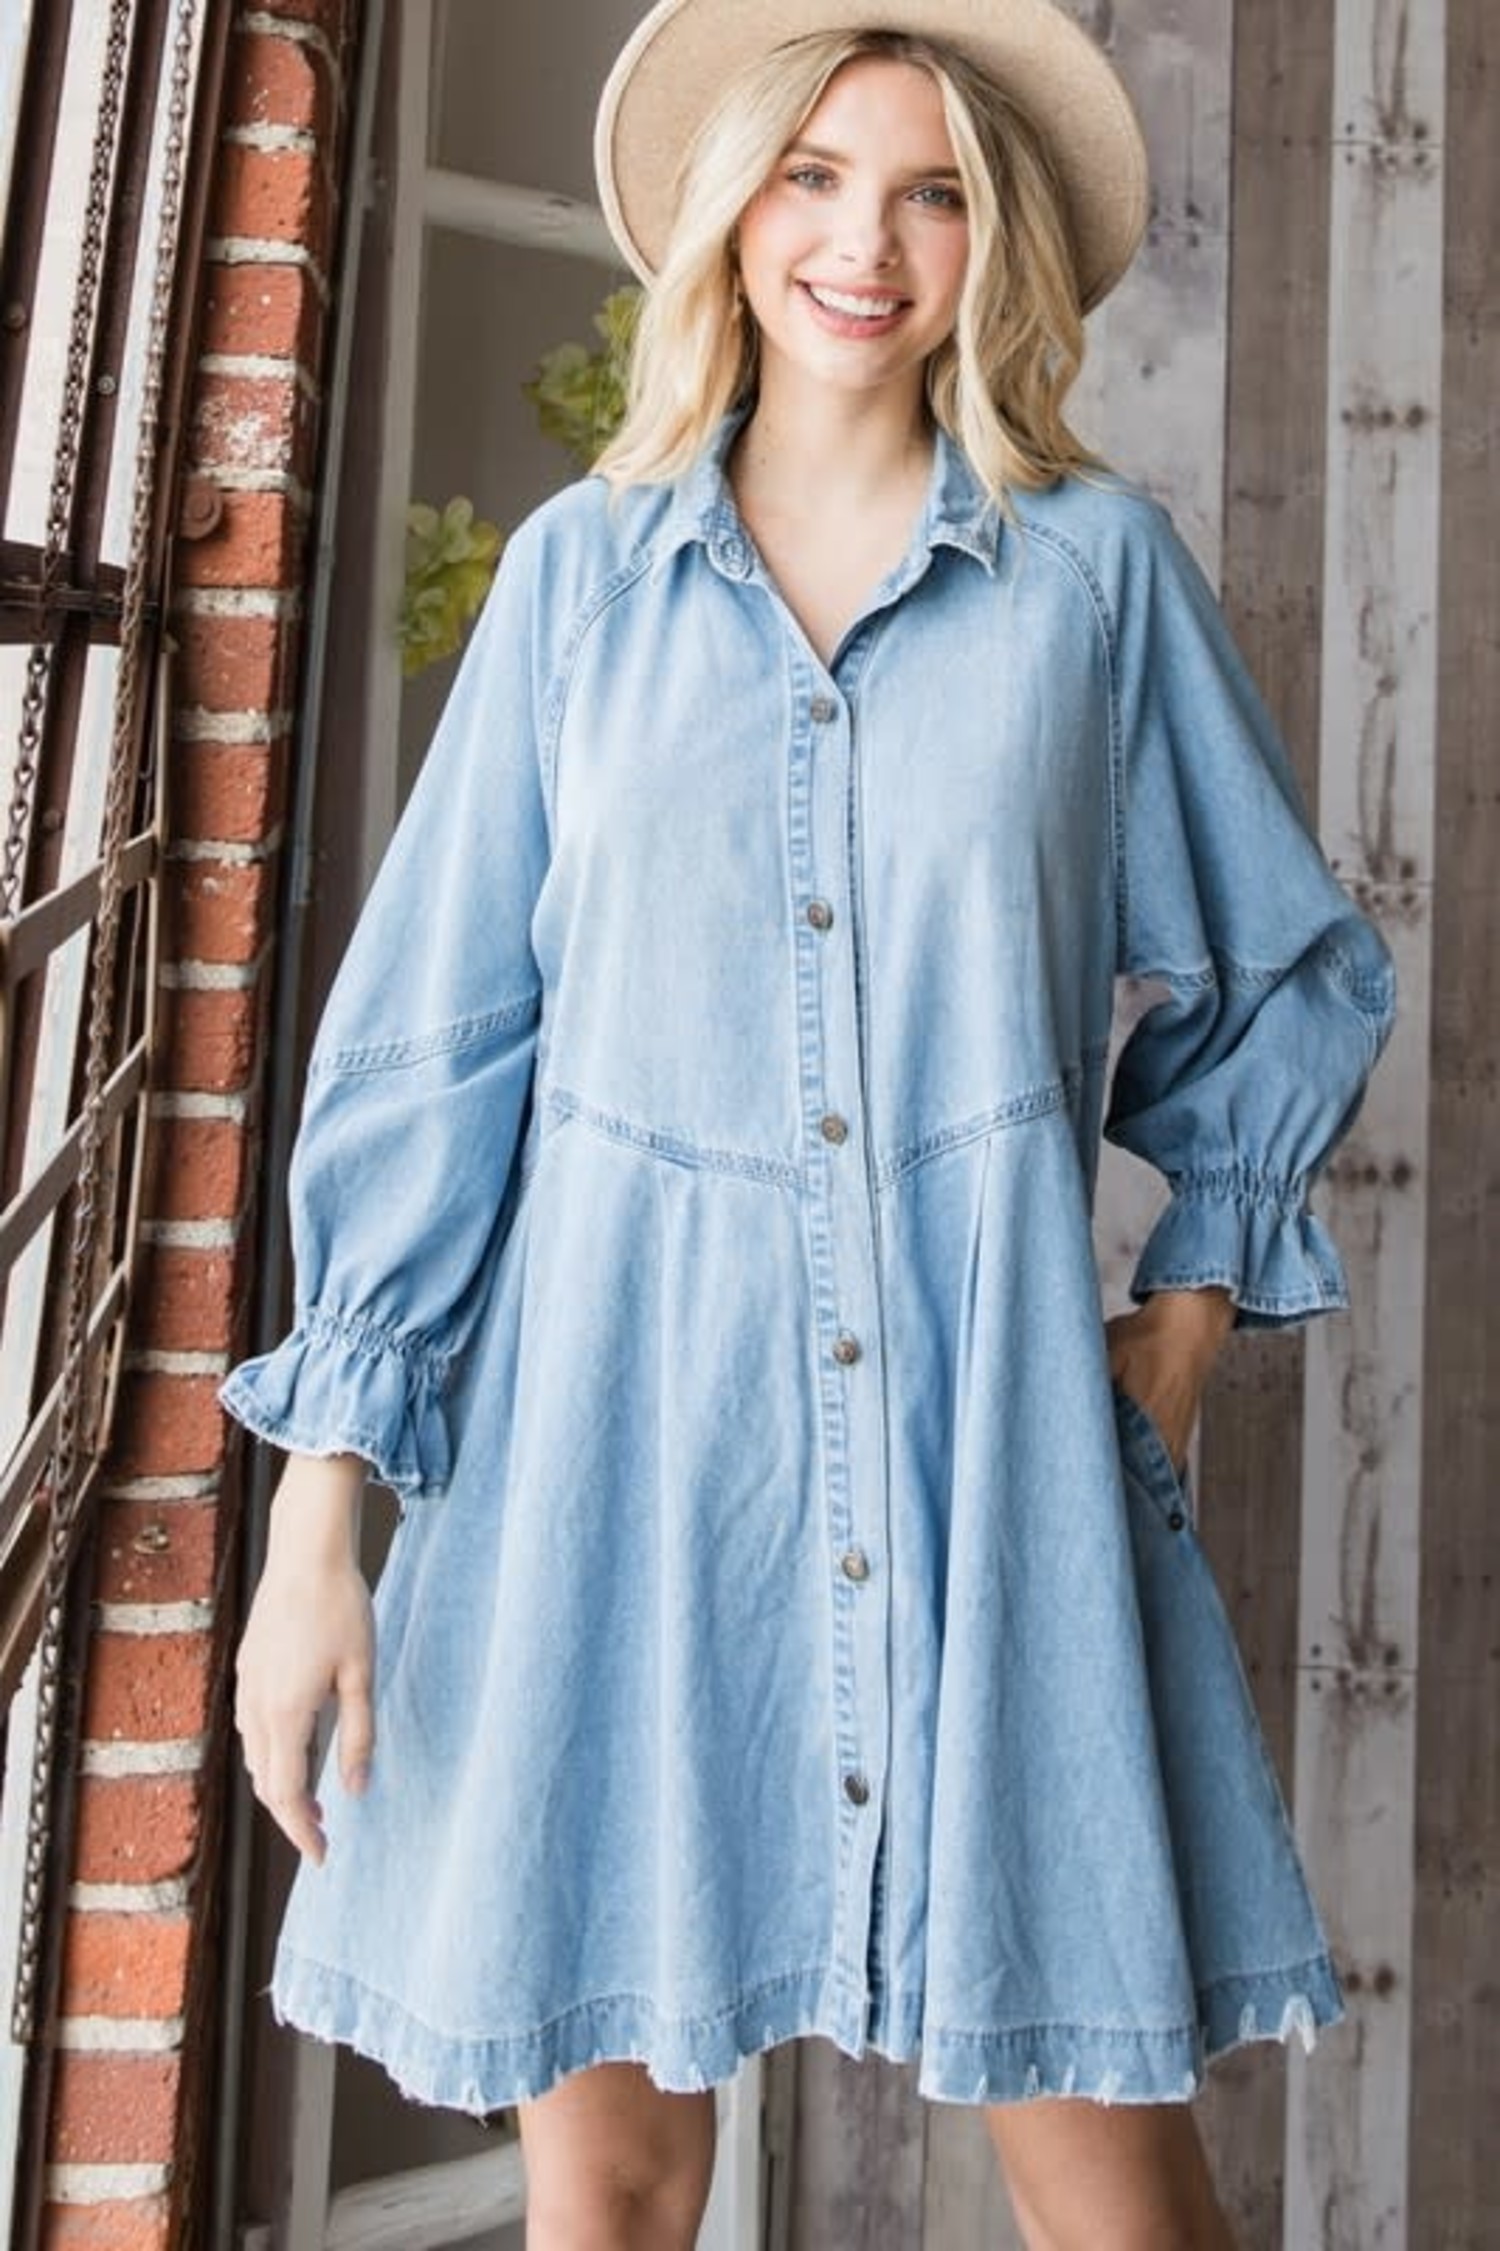 https://cdn.shoplightspeed.com/shops/636905/files/34863564/1500x4000x3/veveret-button-down-denim-shirt-dress.jpg